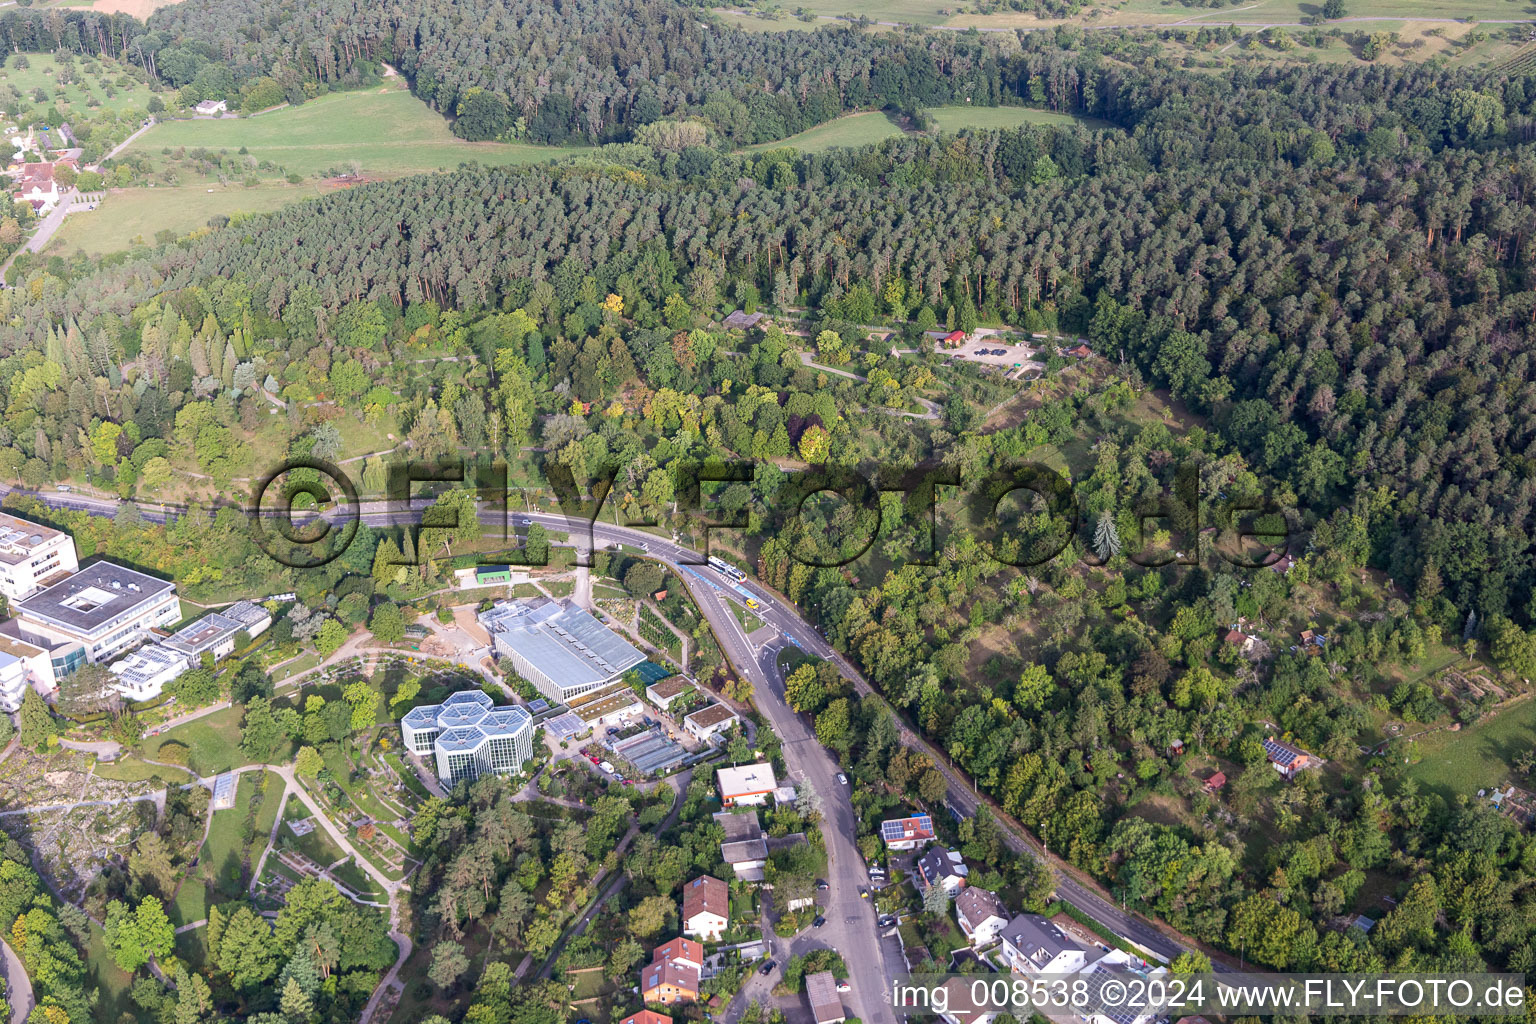 Aerial photograpy of Terraced park Botanischer Garten, Tropicarium and Arboretum of Universitaet Tuebingen in Tuebingen in the state Baden-Wuerttemberg, Germany